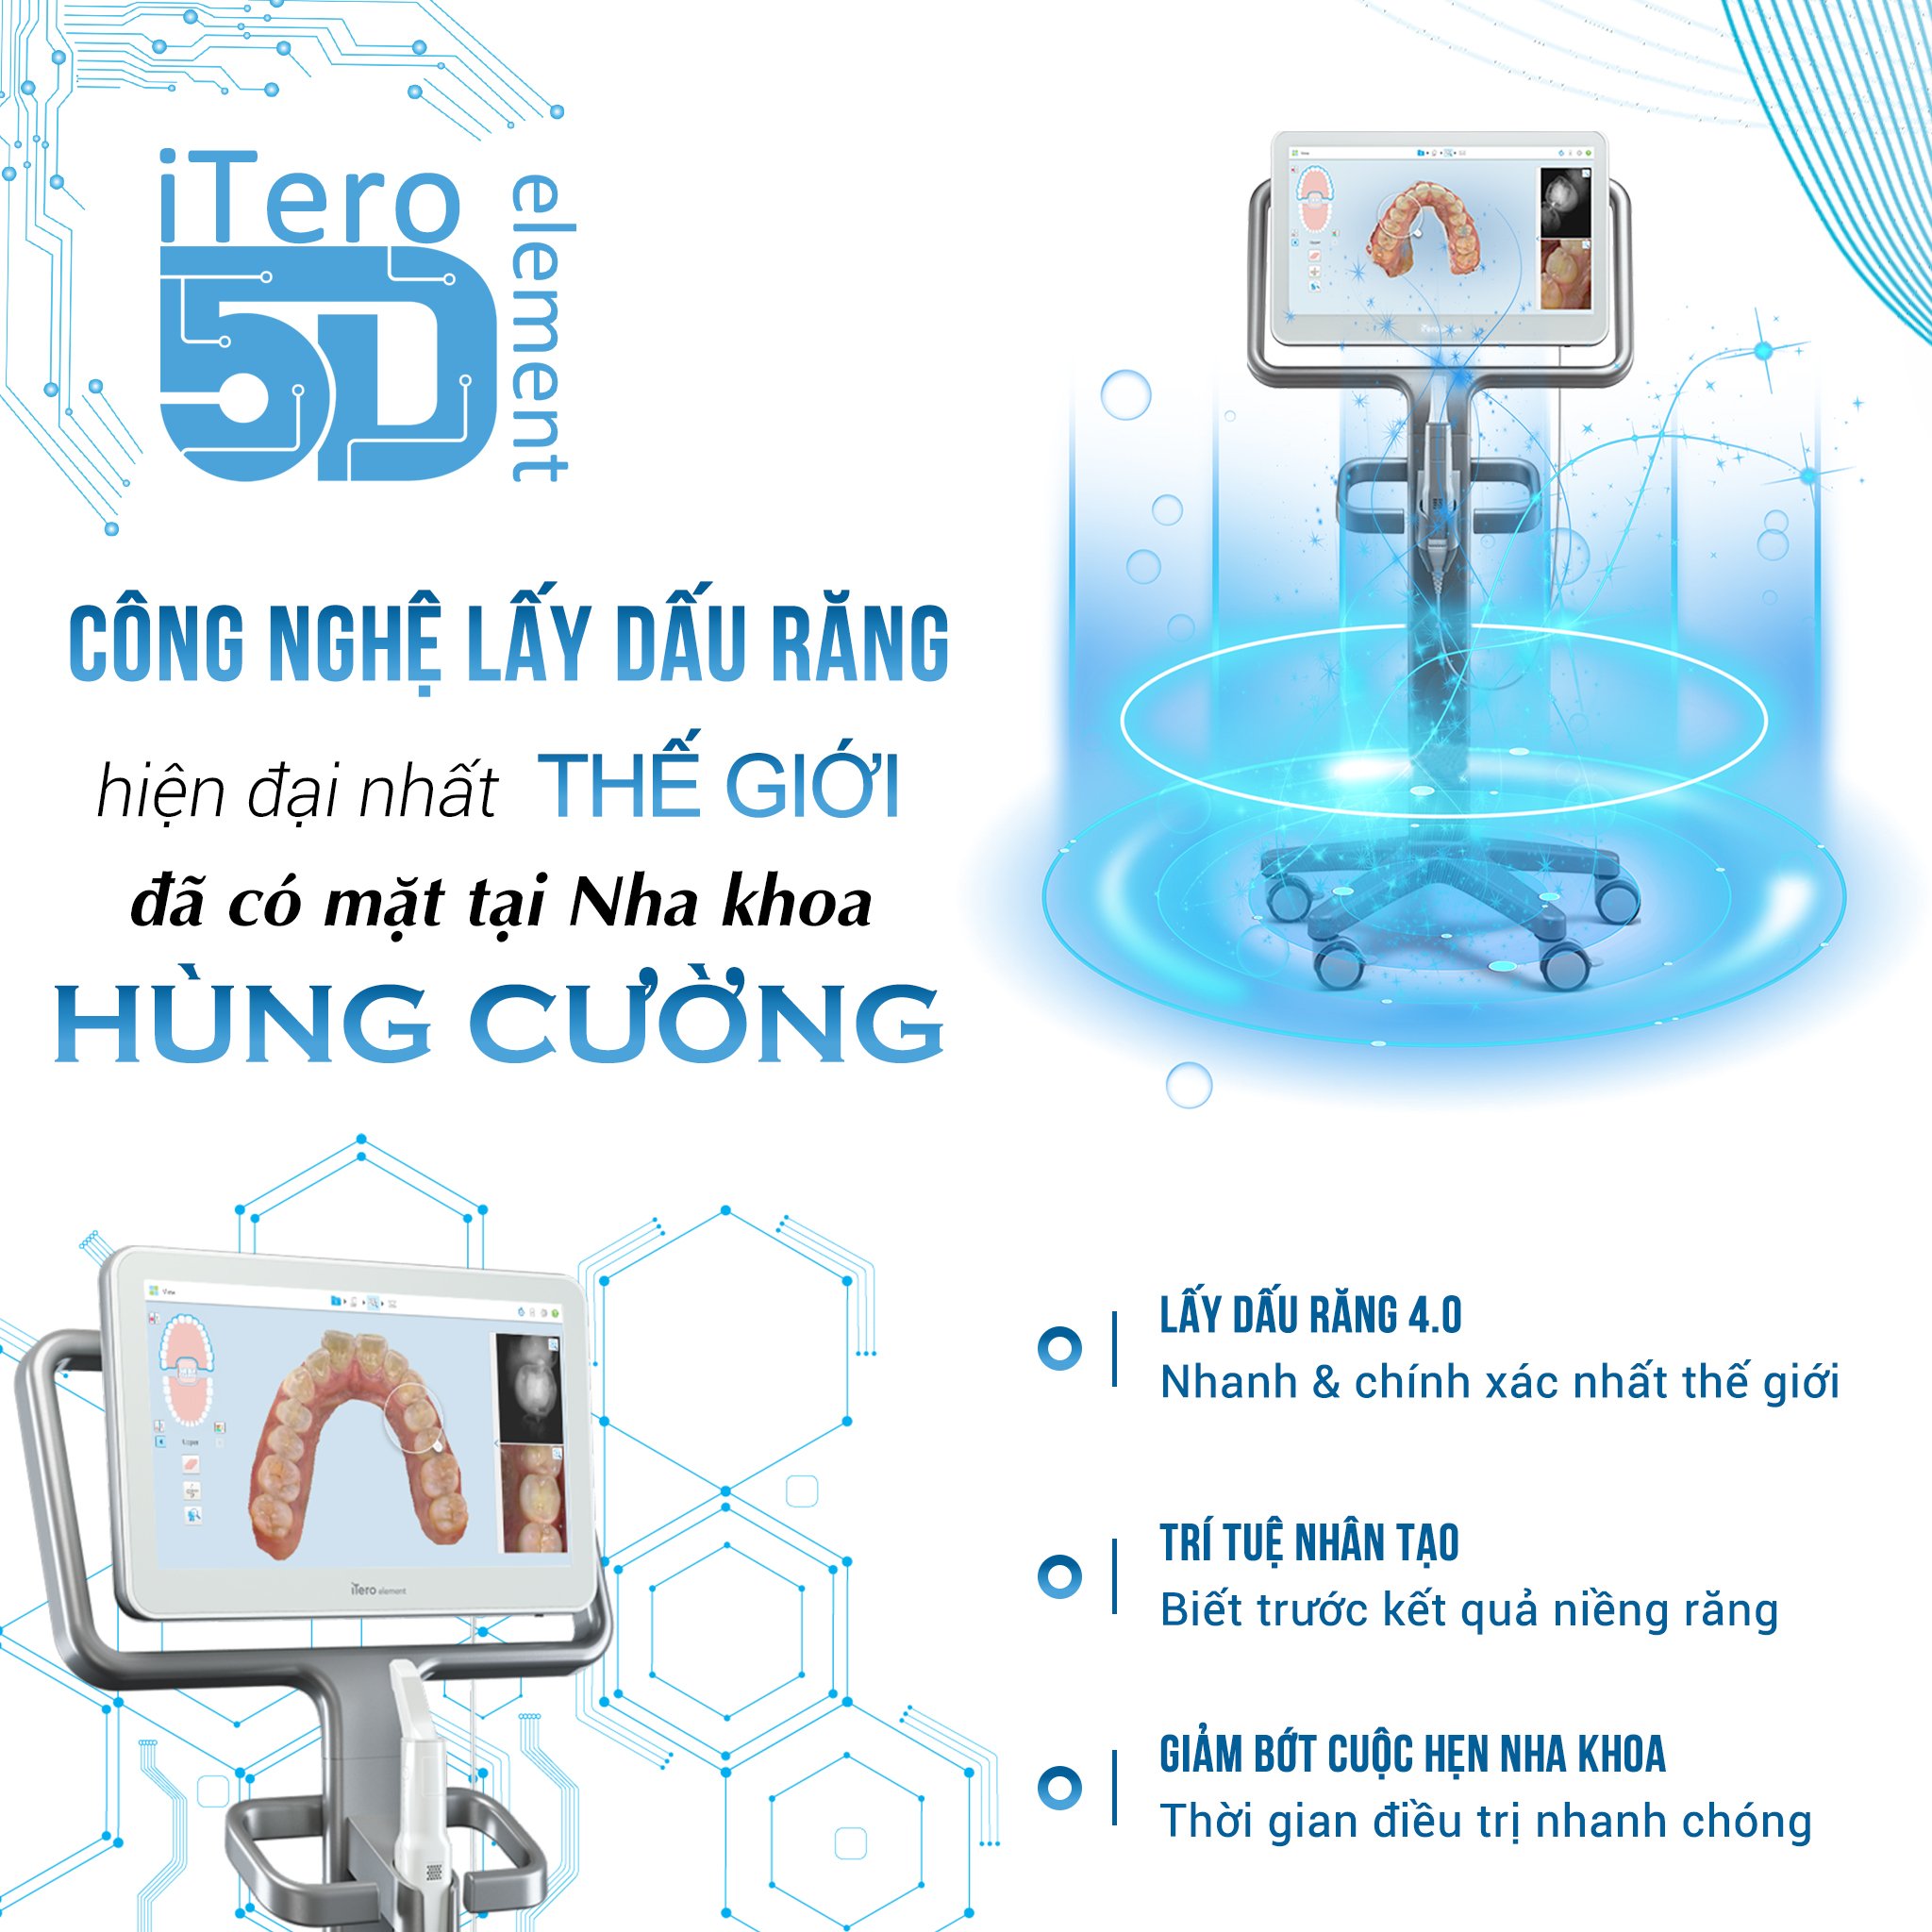 ITERO 5D - Công nghệ lấy dấu răng chuẩn xác nhất thế giới